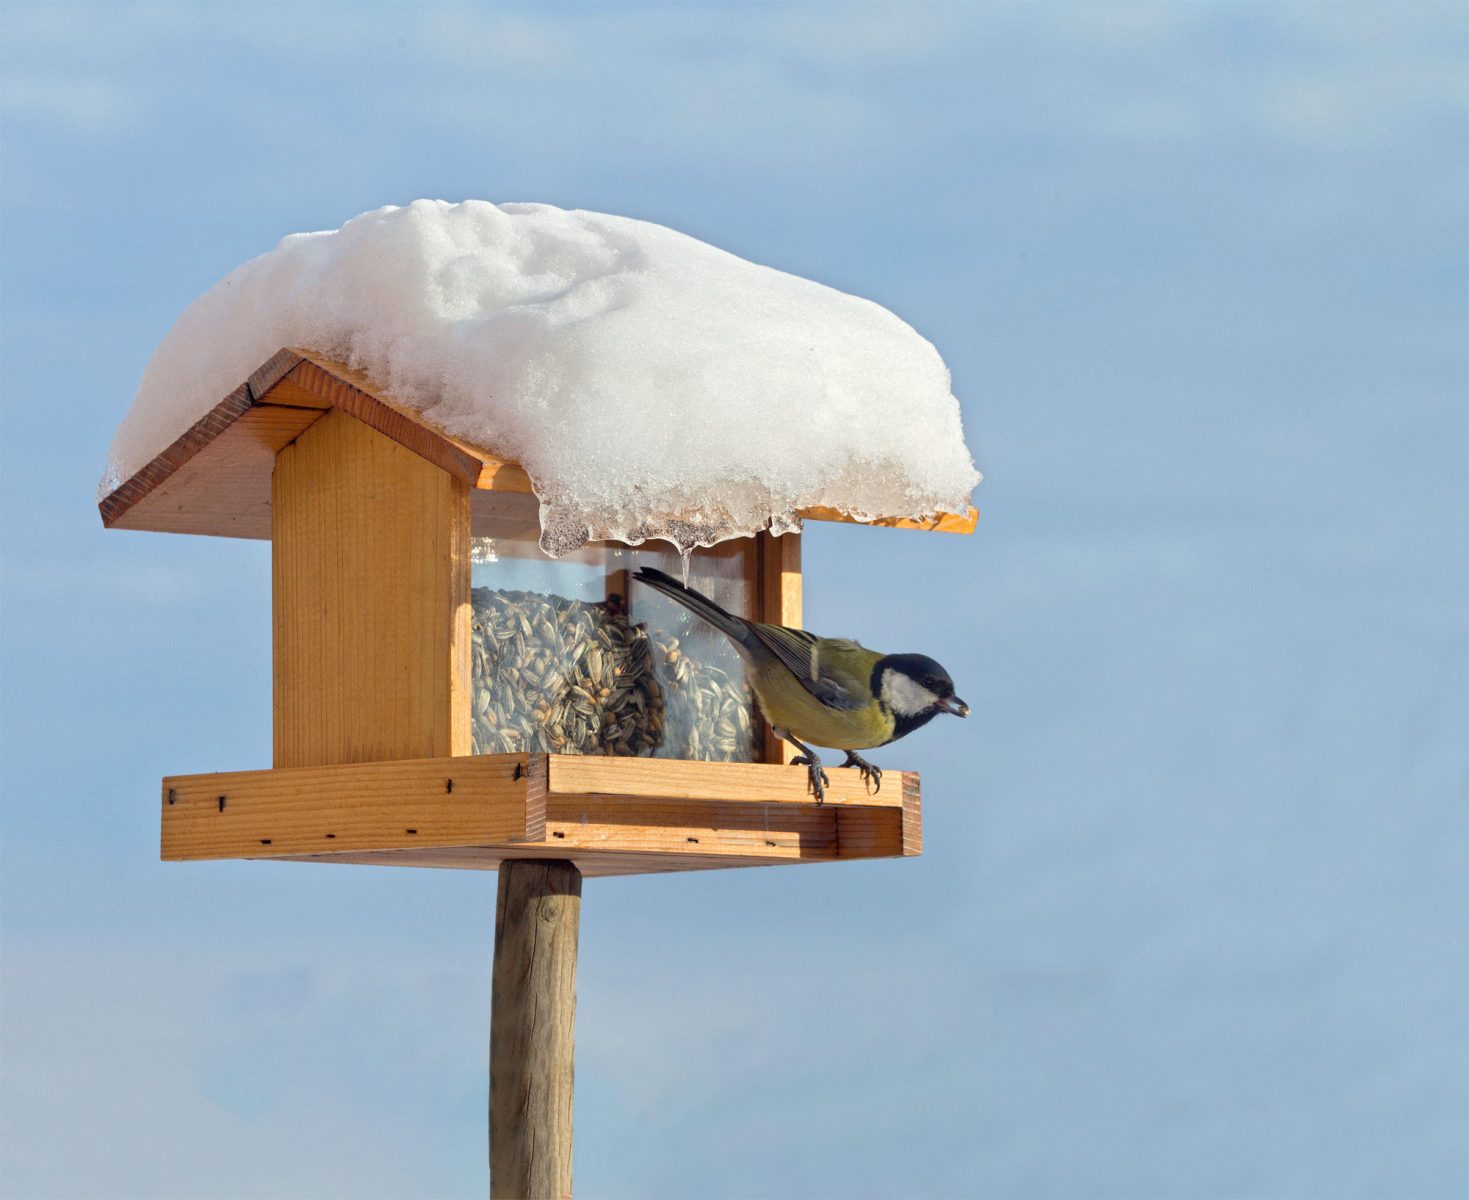 Mangeoire à oiseaux : comment nourrir les oiseaux de son jardin en